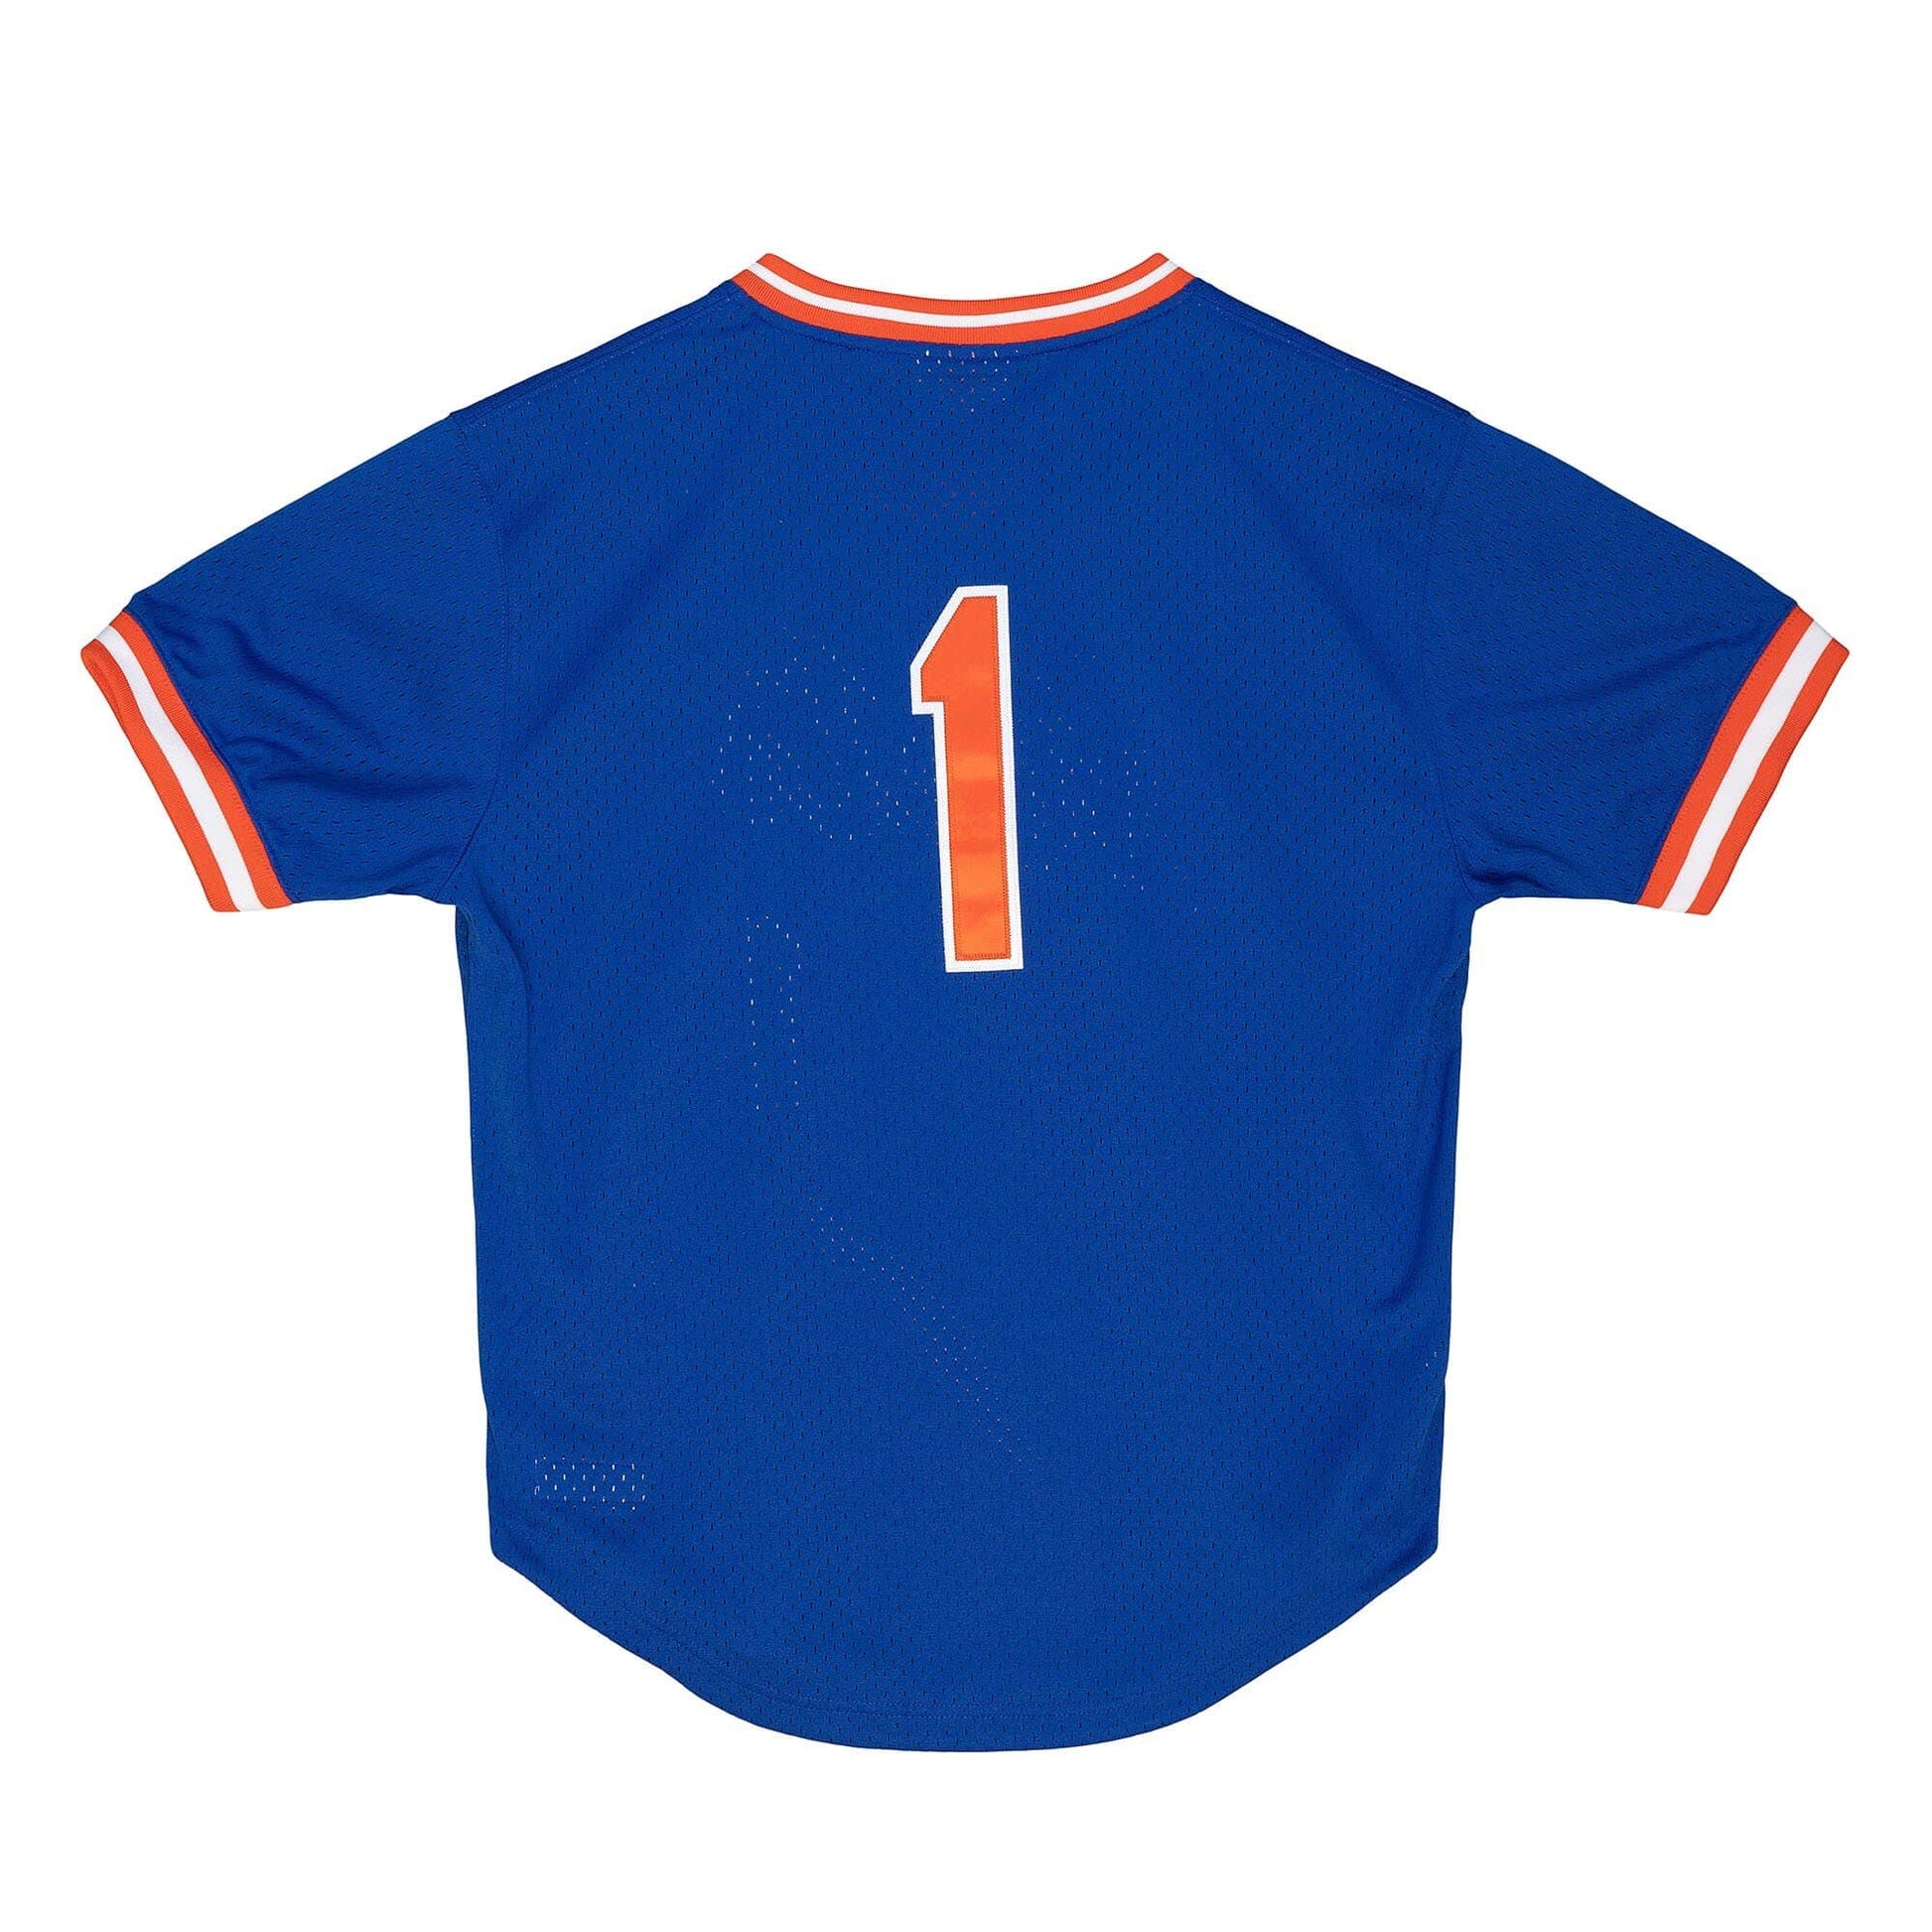 Authentic Mookie Wilson New York Mets 1986 BP Jersey - Shop